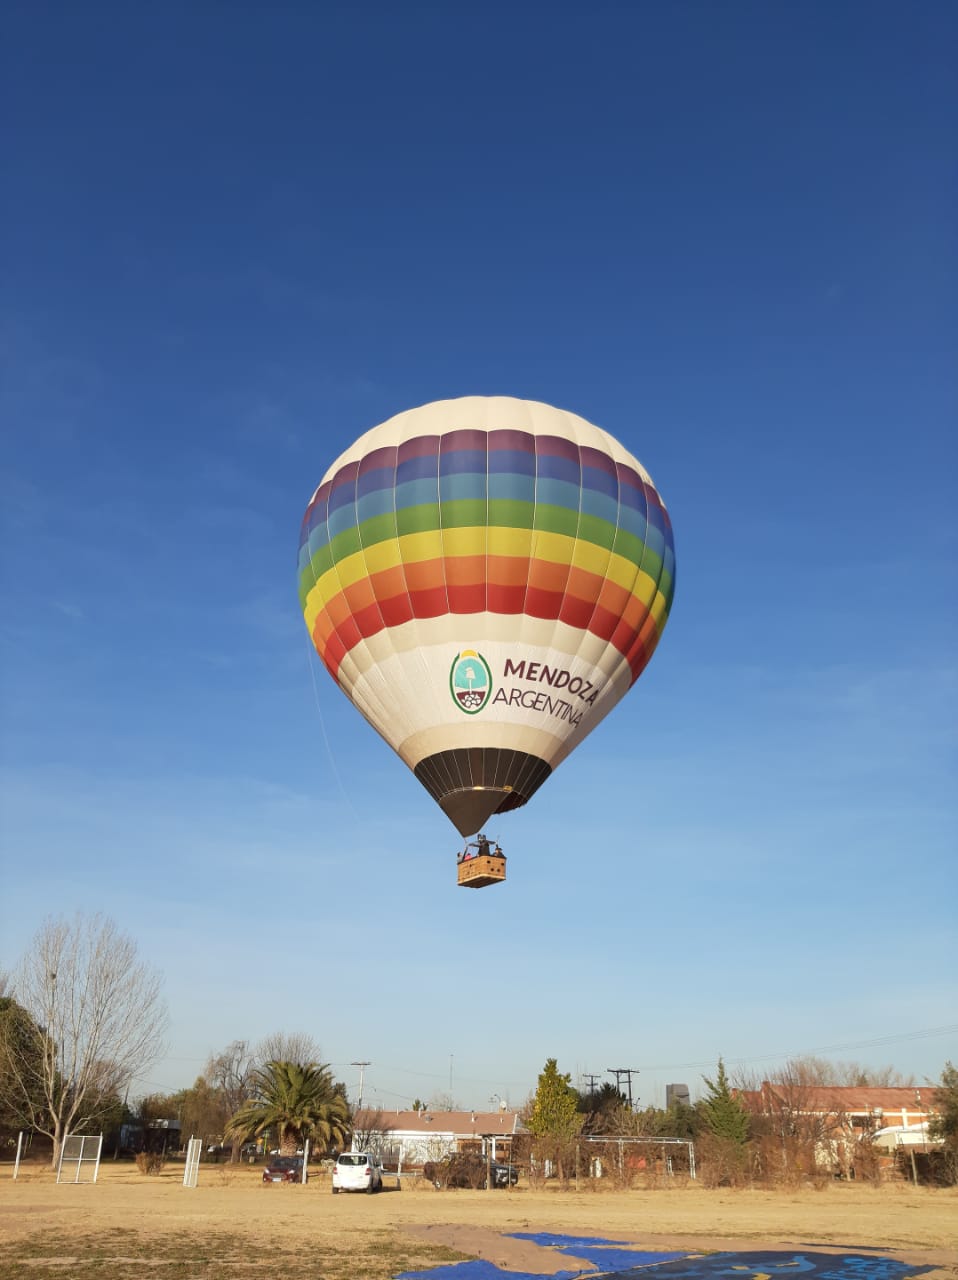 Mendoza Balloons: La experiencia única de volar en globo aerostático